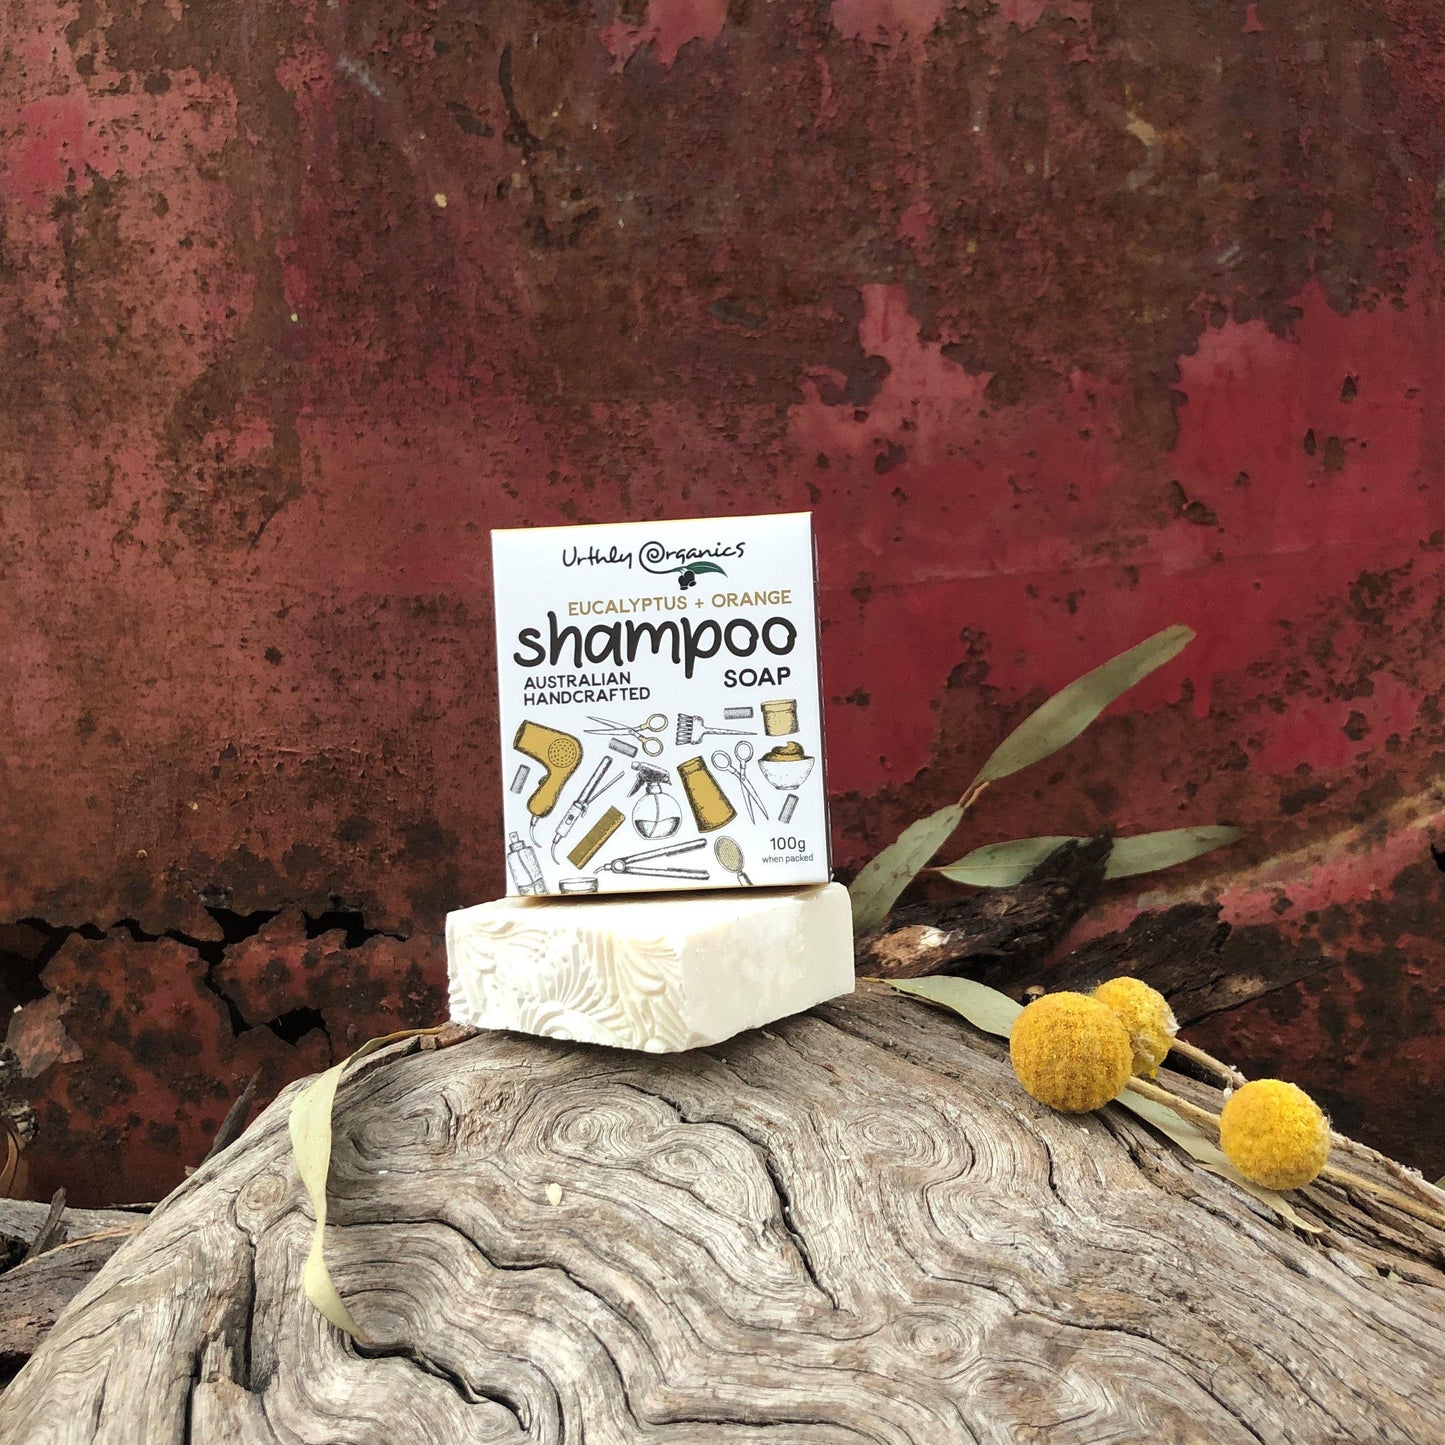 Orange + Eucalyptus Shampoo Soap Bar - UrthlyOrganics Natural ethical skincare and cleaning